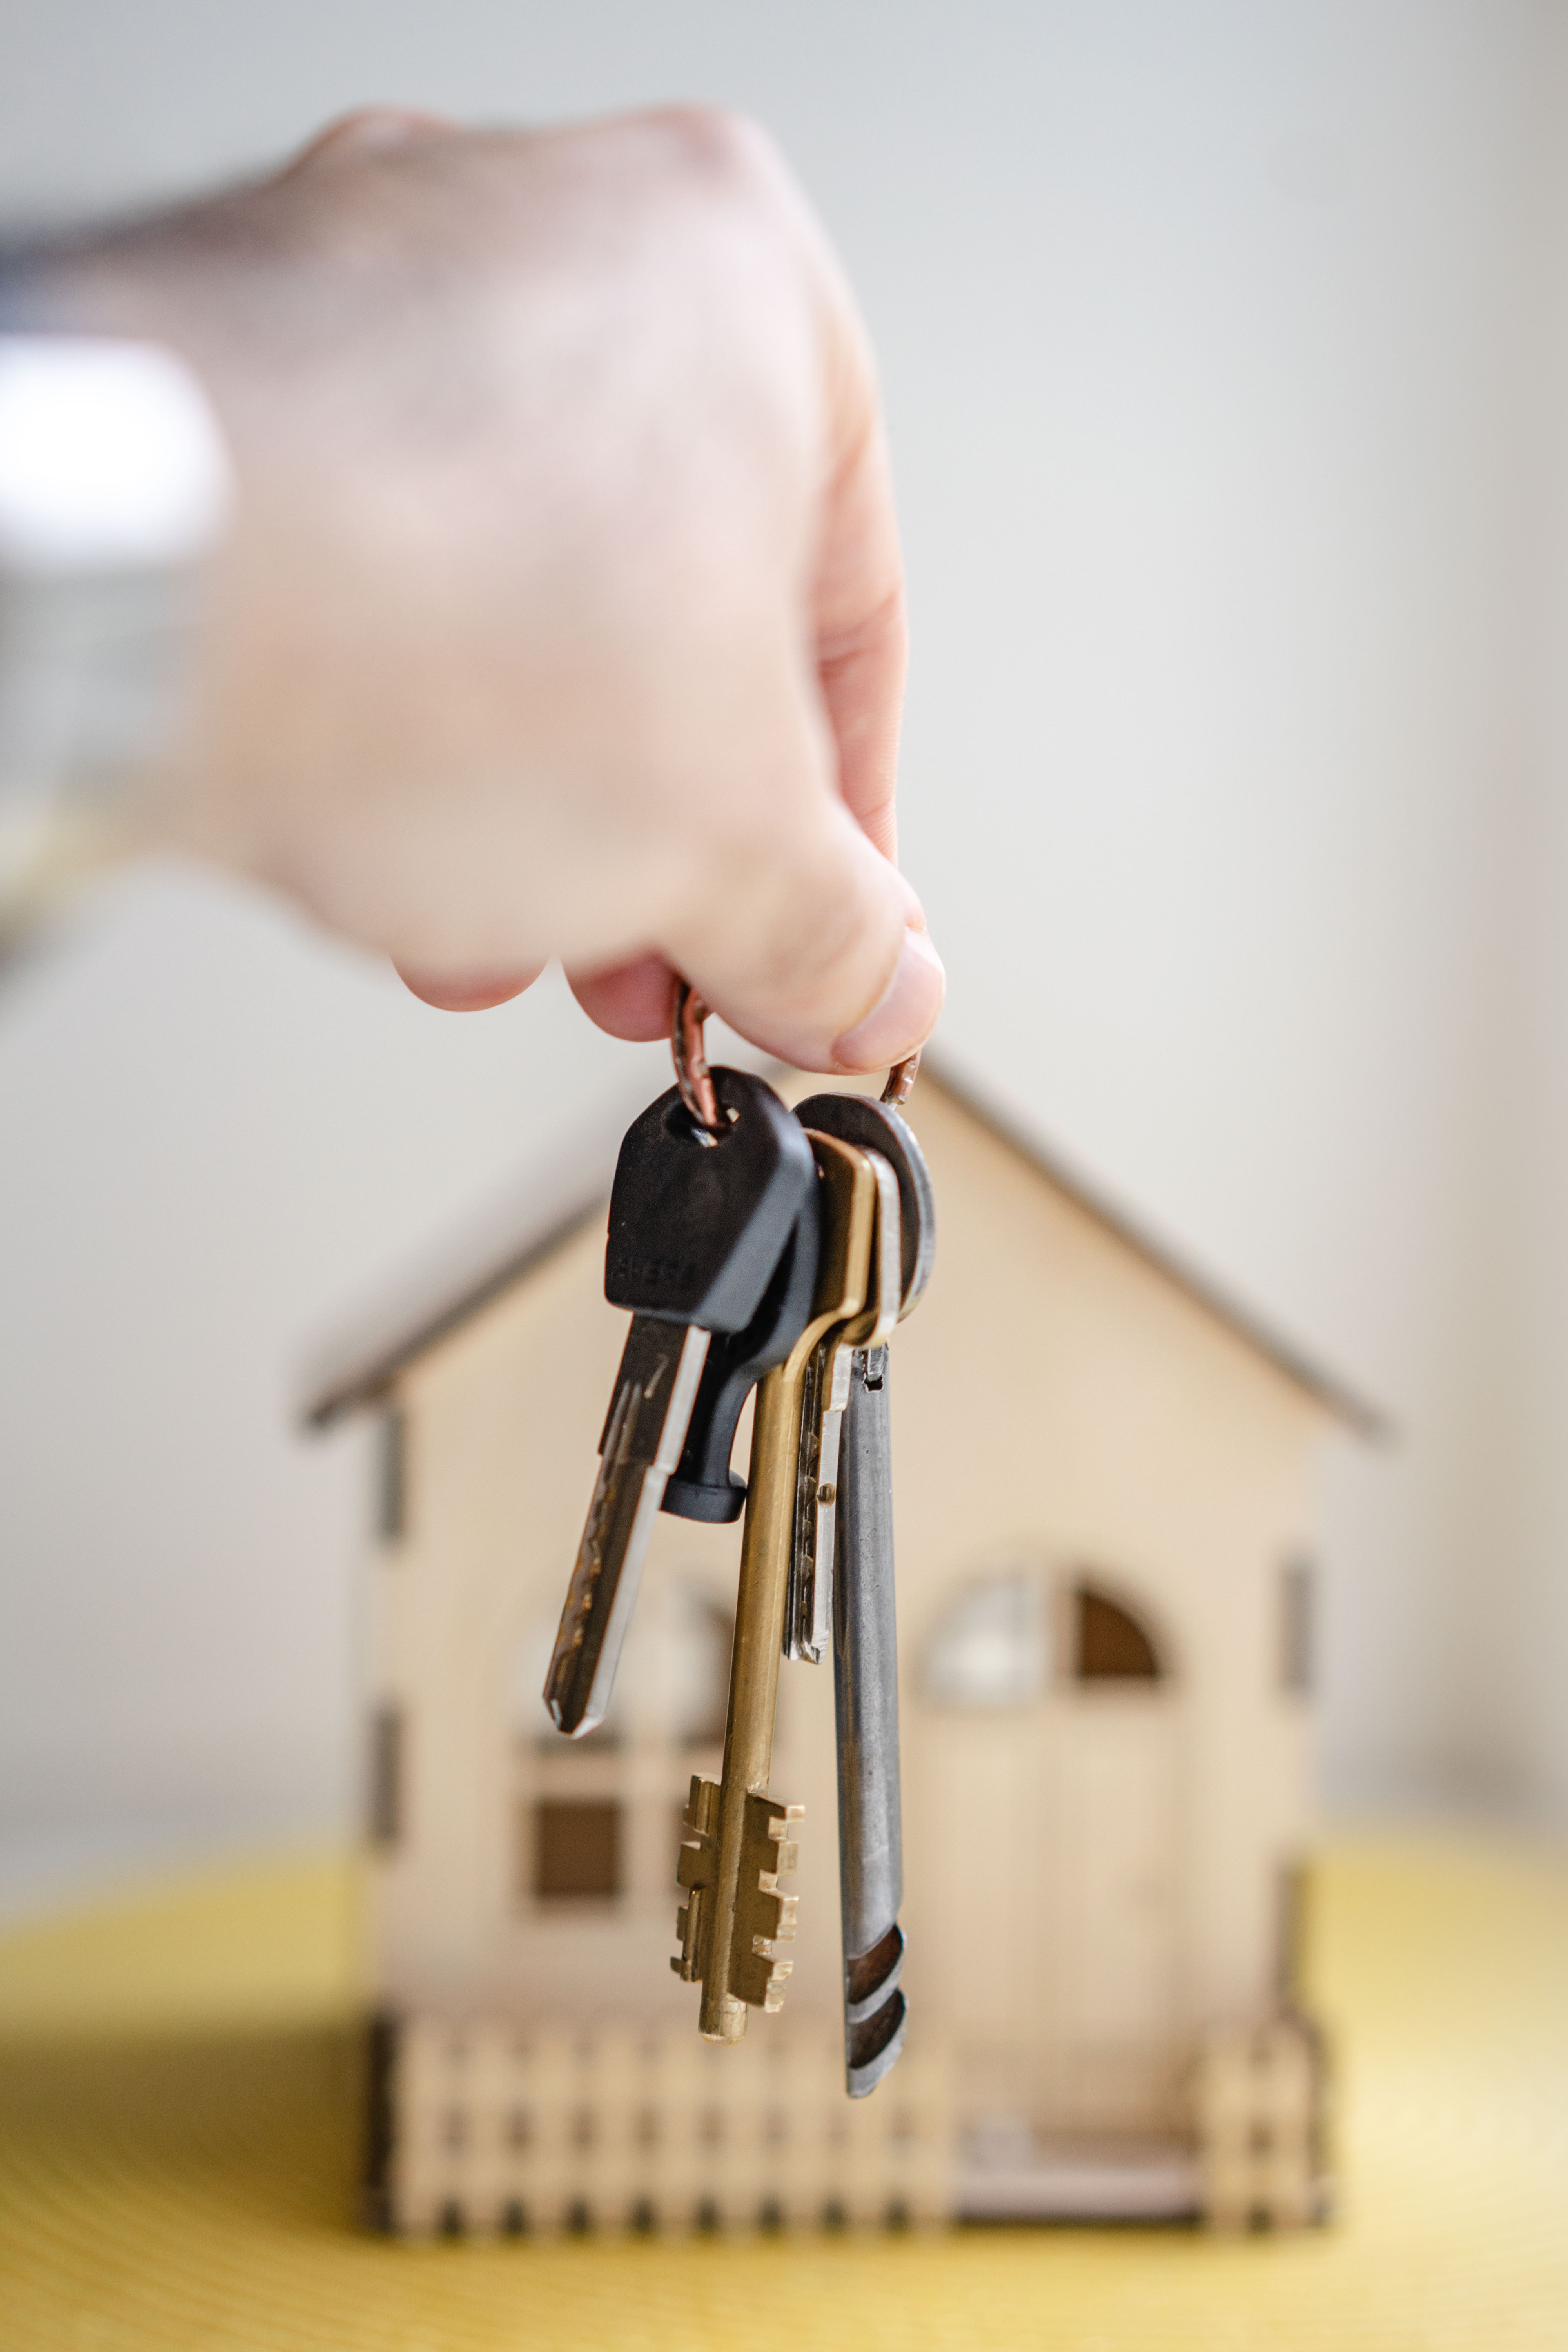 Imagen que describe las llaves de una propiedad